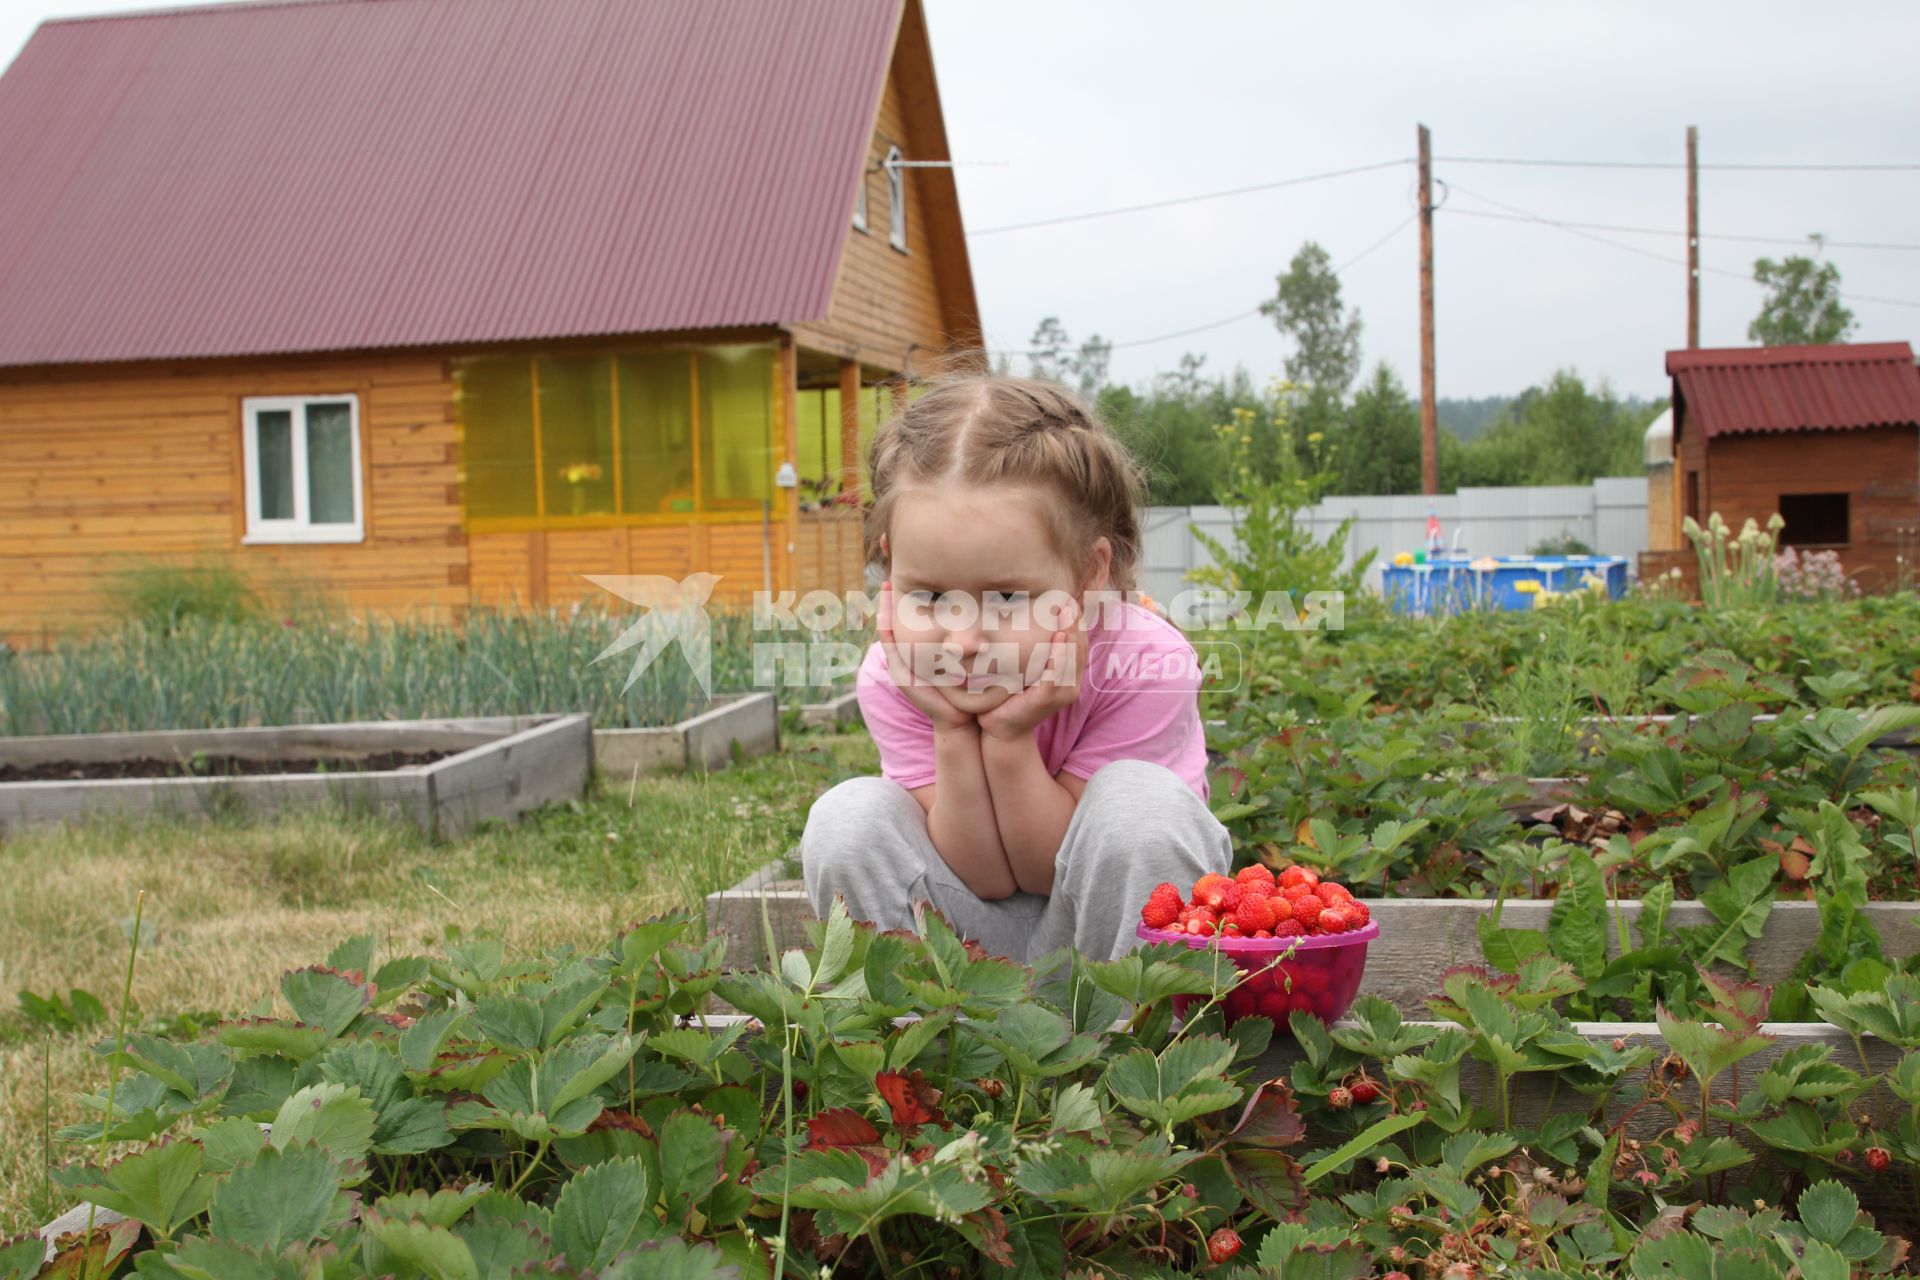 Иркутск. Девочка собирает клубнику на дачном участке.